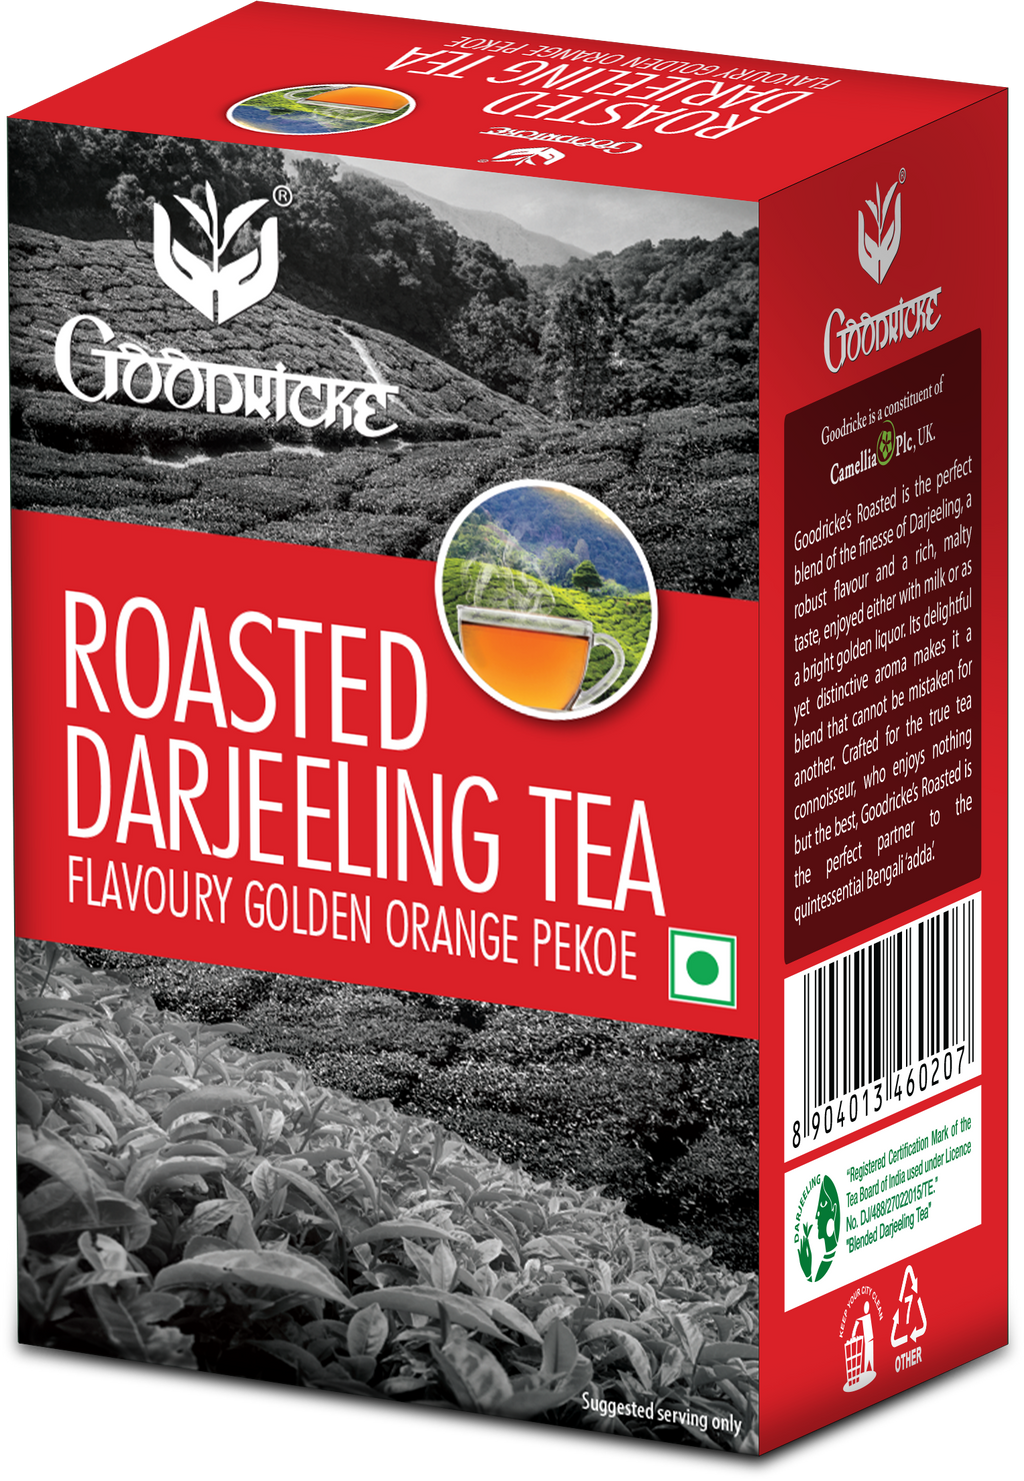 Castleton Vintage Darjeeling Tea (250 gms) + Roasted Darjeeling Tea (250 gms) Combo Pack